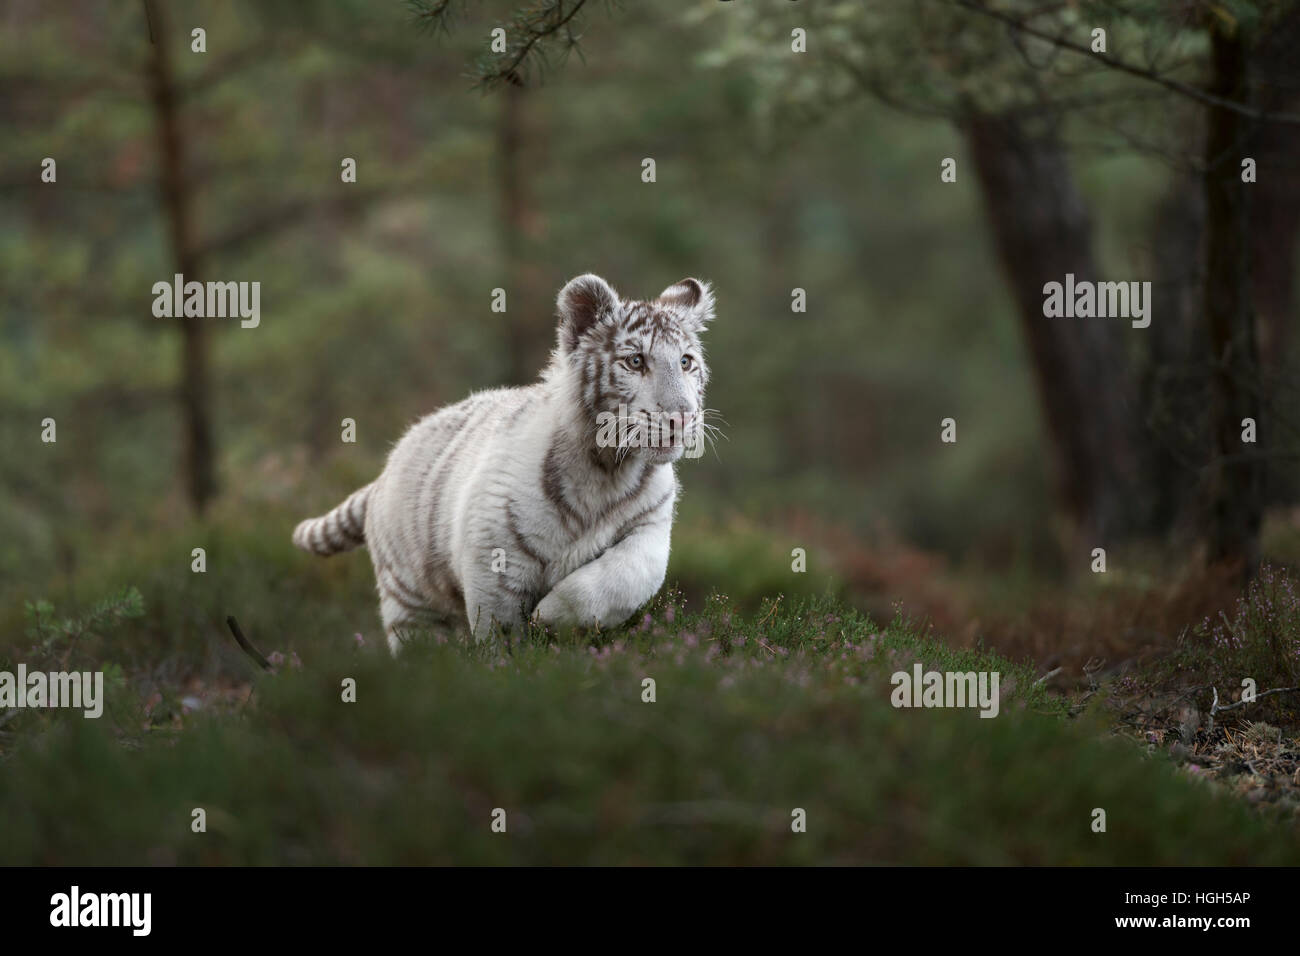 Royal tigre du Bengale (Panthera tigris ), forme blanche, courir vite, sauter à travers une forêt naturelle, faible point de vue. Banque D'Images